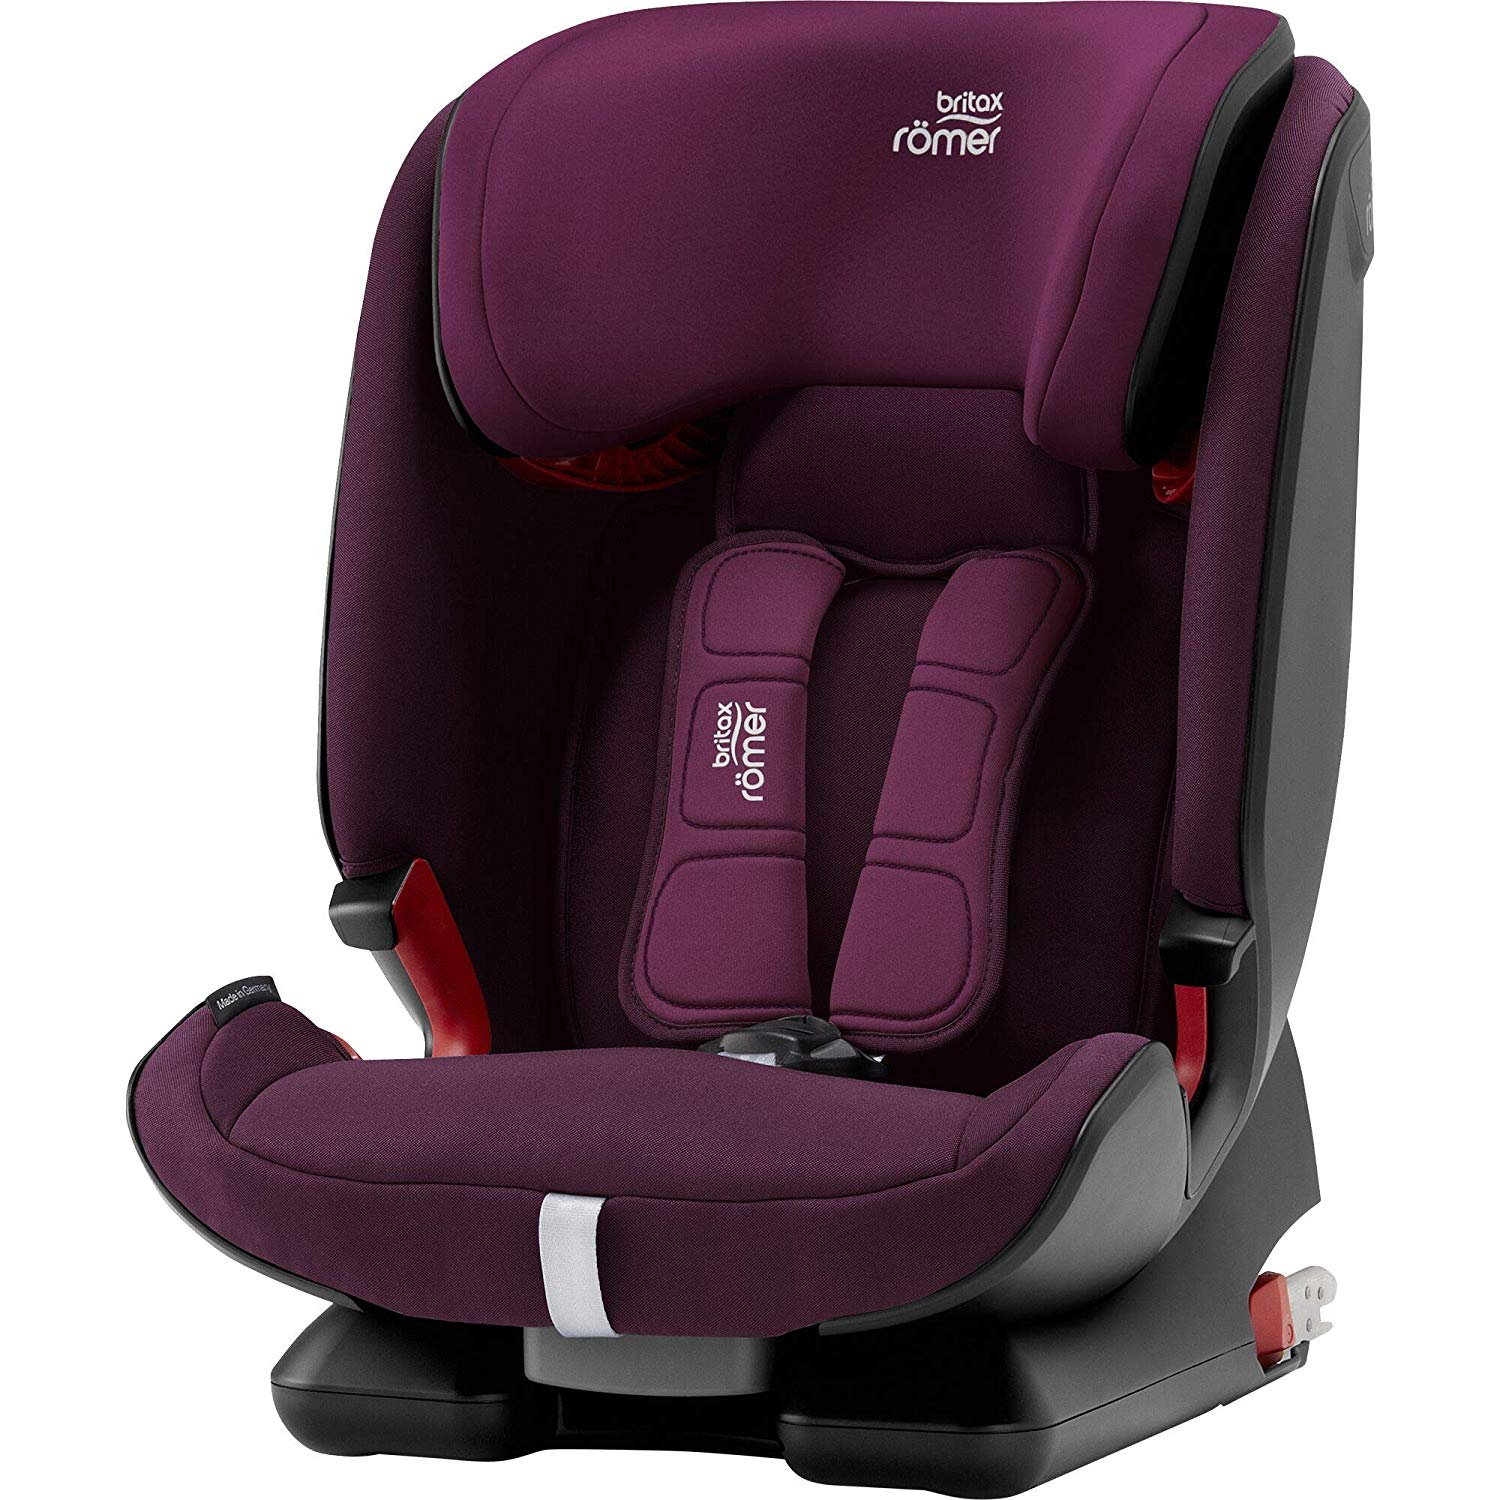 Britax Römer Child Car Seat Burgundy red